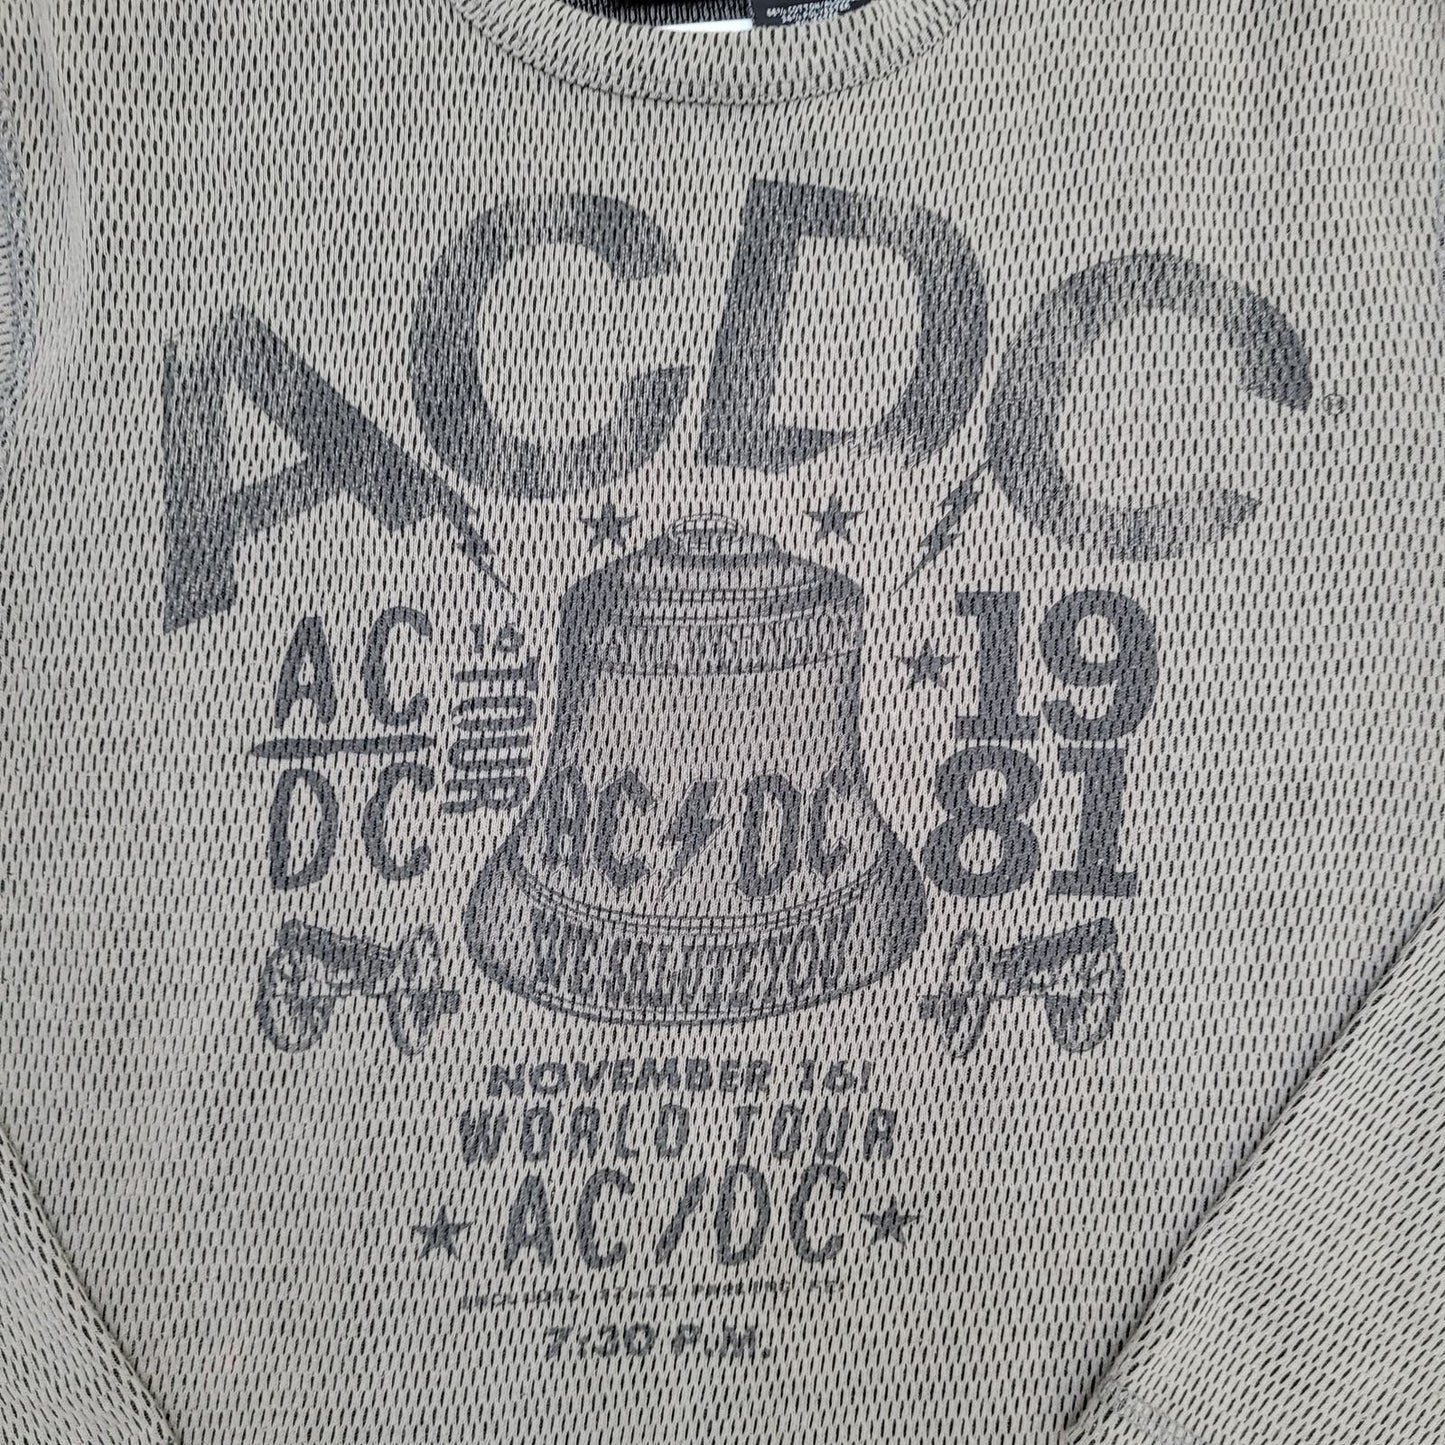 1981 ACDC Tour Mesh Shirt M/L